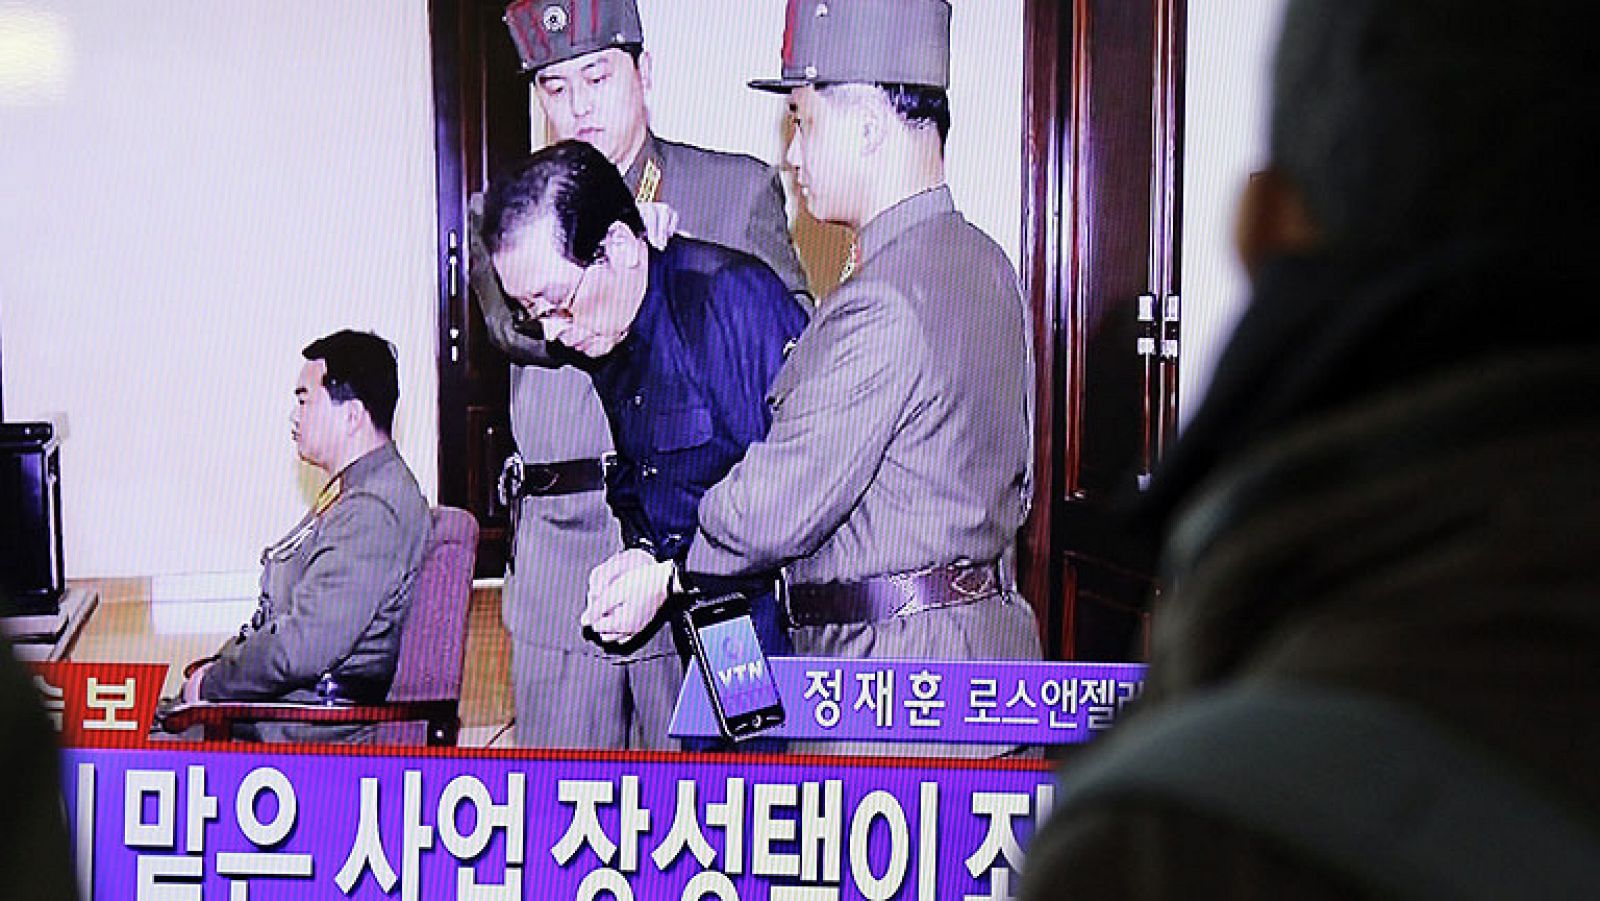  La ejecución anunciada hoy de Jang Song-thaek, tío del líder norcoreano Kim Jong-un y considerado número dos del régimen comunista de Corea del Norte, ha despertado temores a que el país entre en un periodo de inestabilidad y lleve a cabo nuevas provocaciones. 